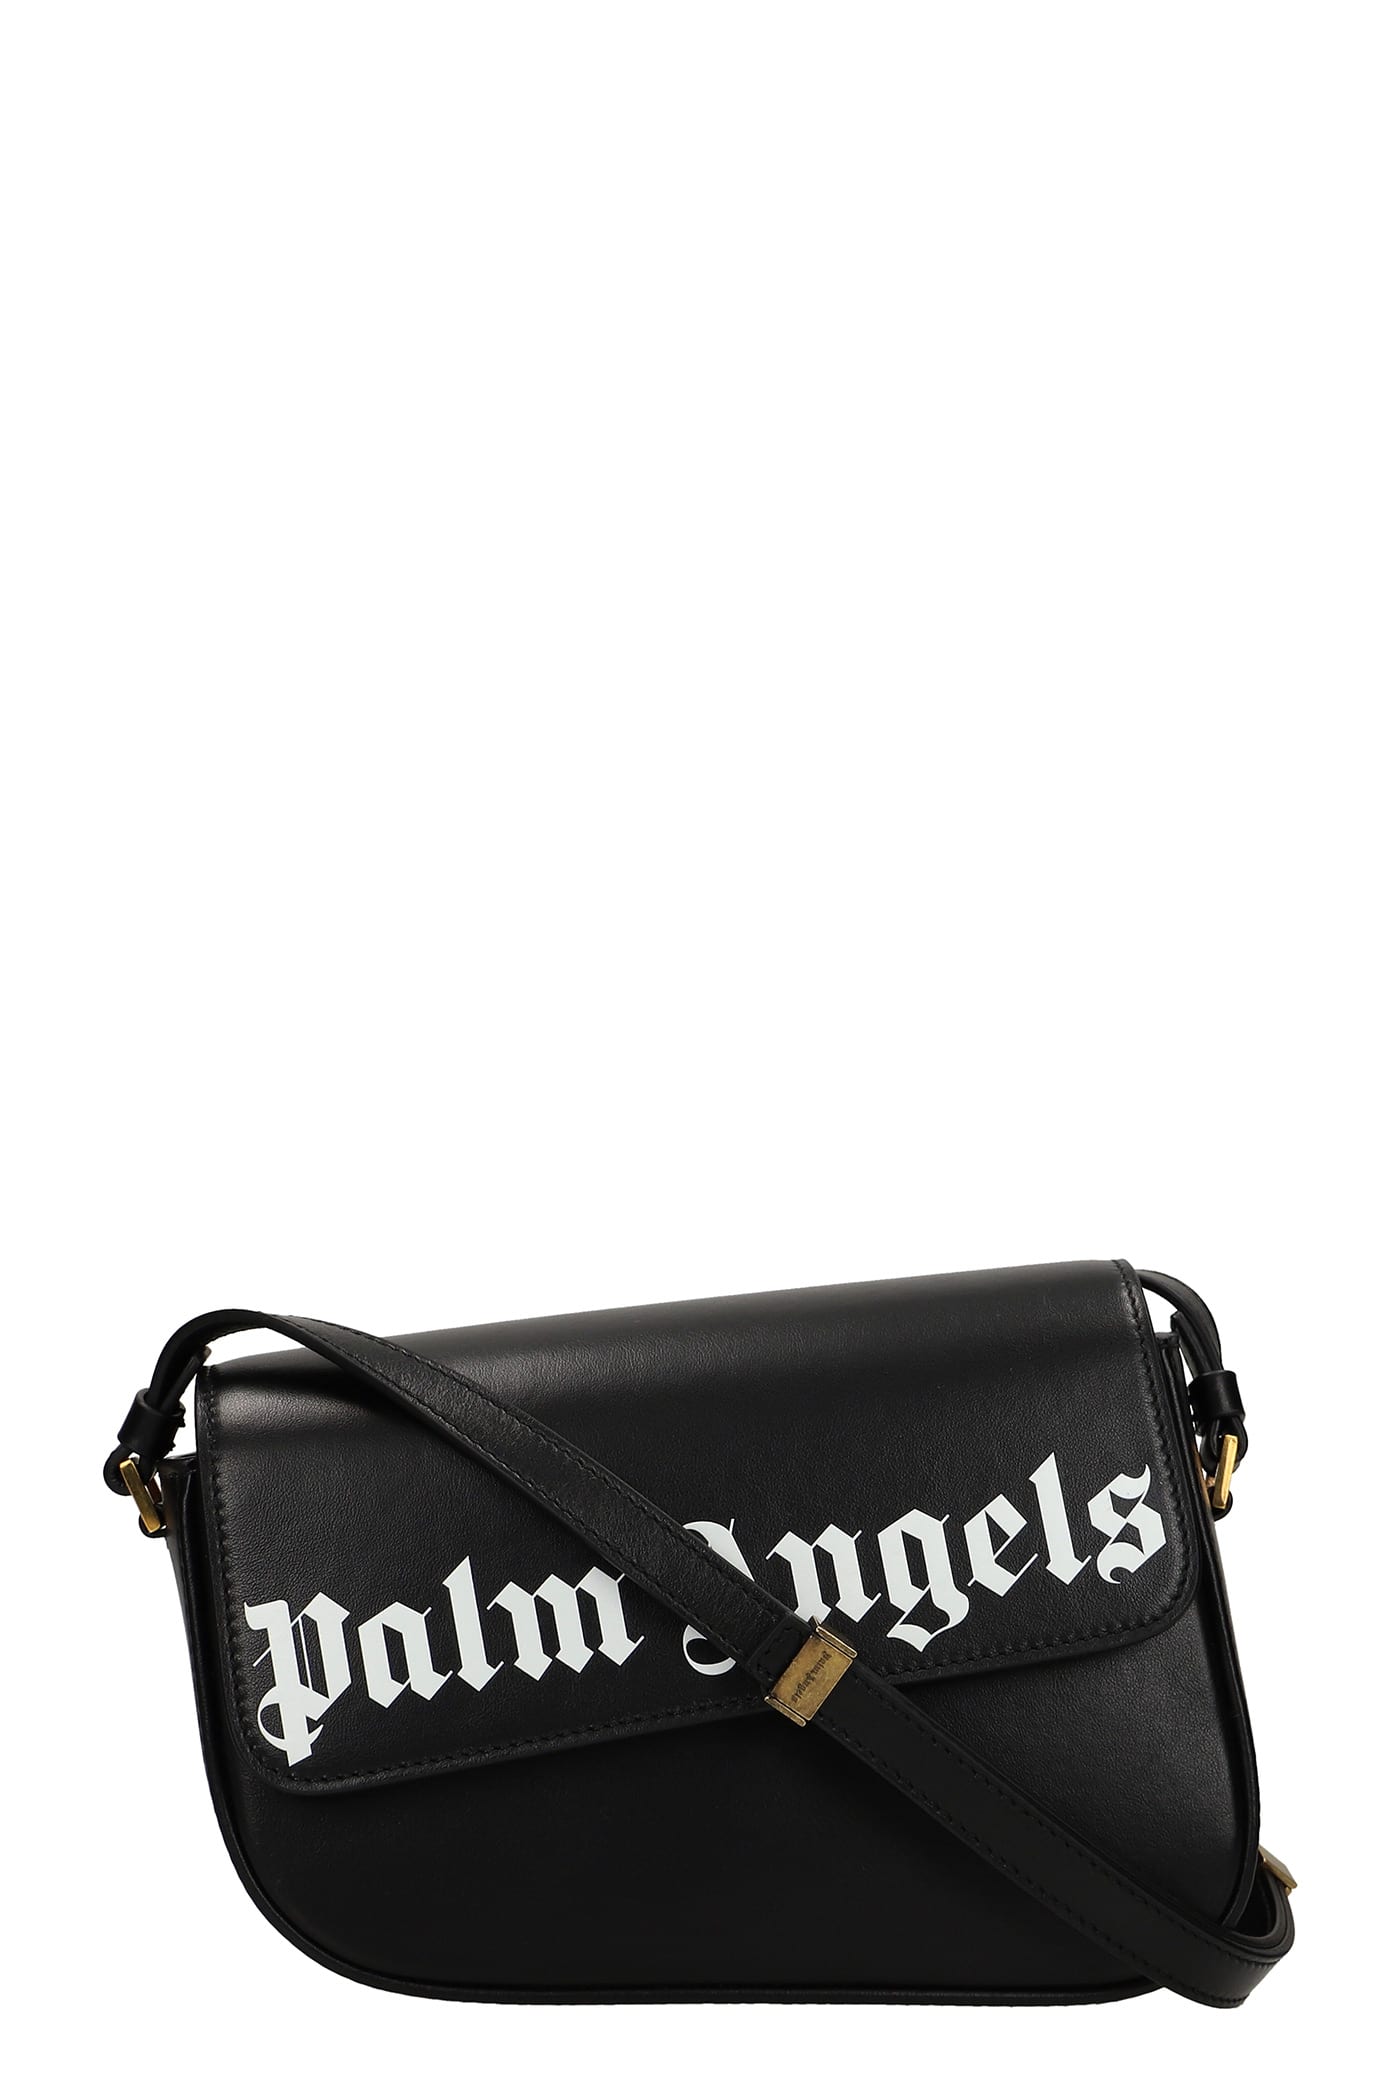 Palm Angels Shoulder Bag In Black Leather